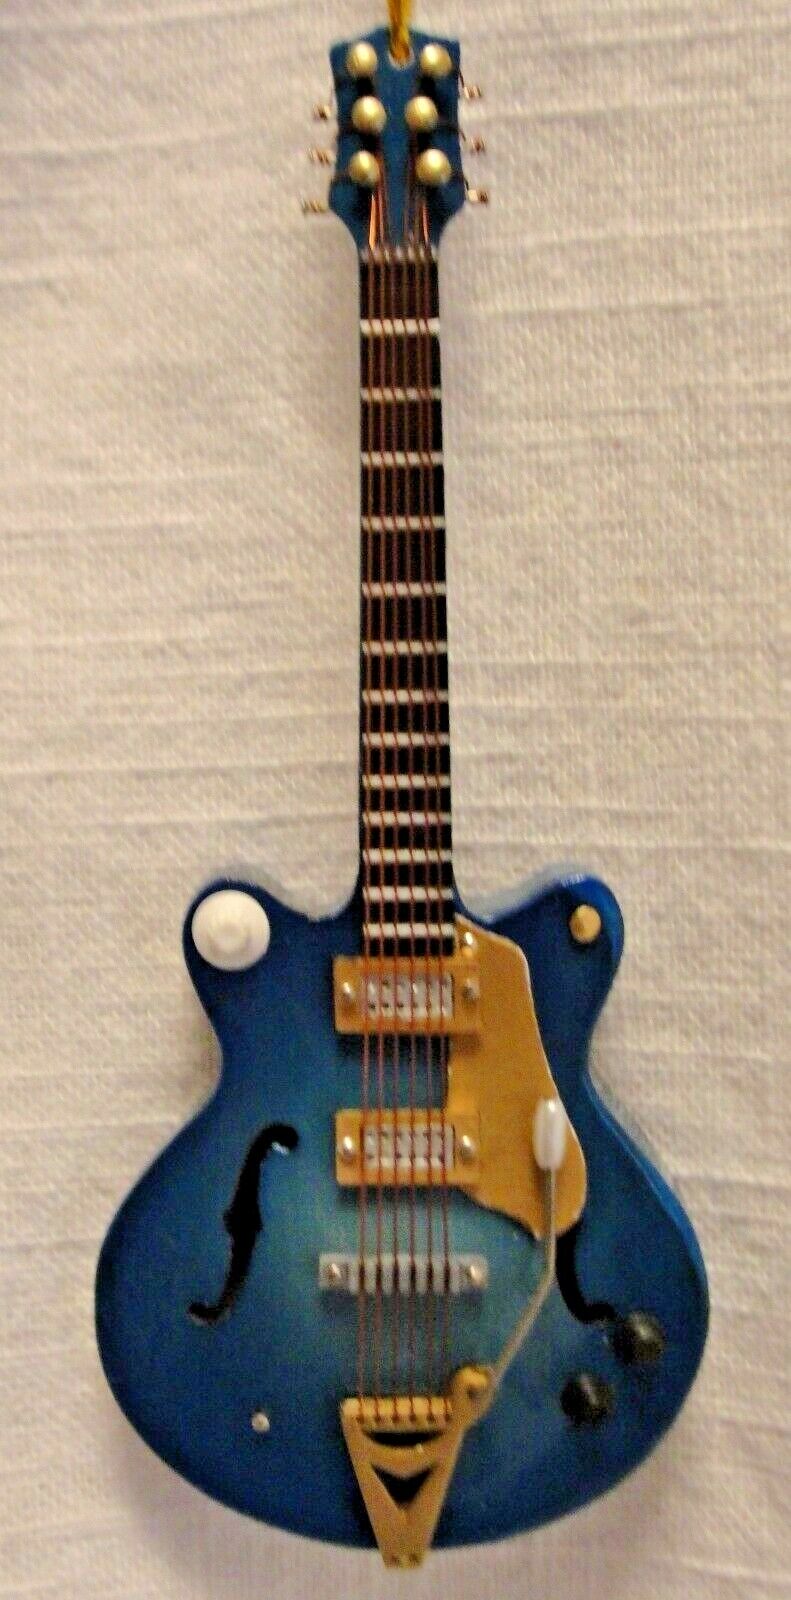 Blue Les Paul Electric Guitar Ornament